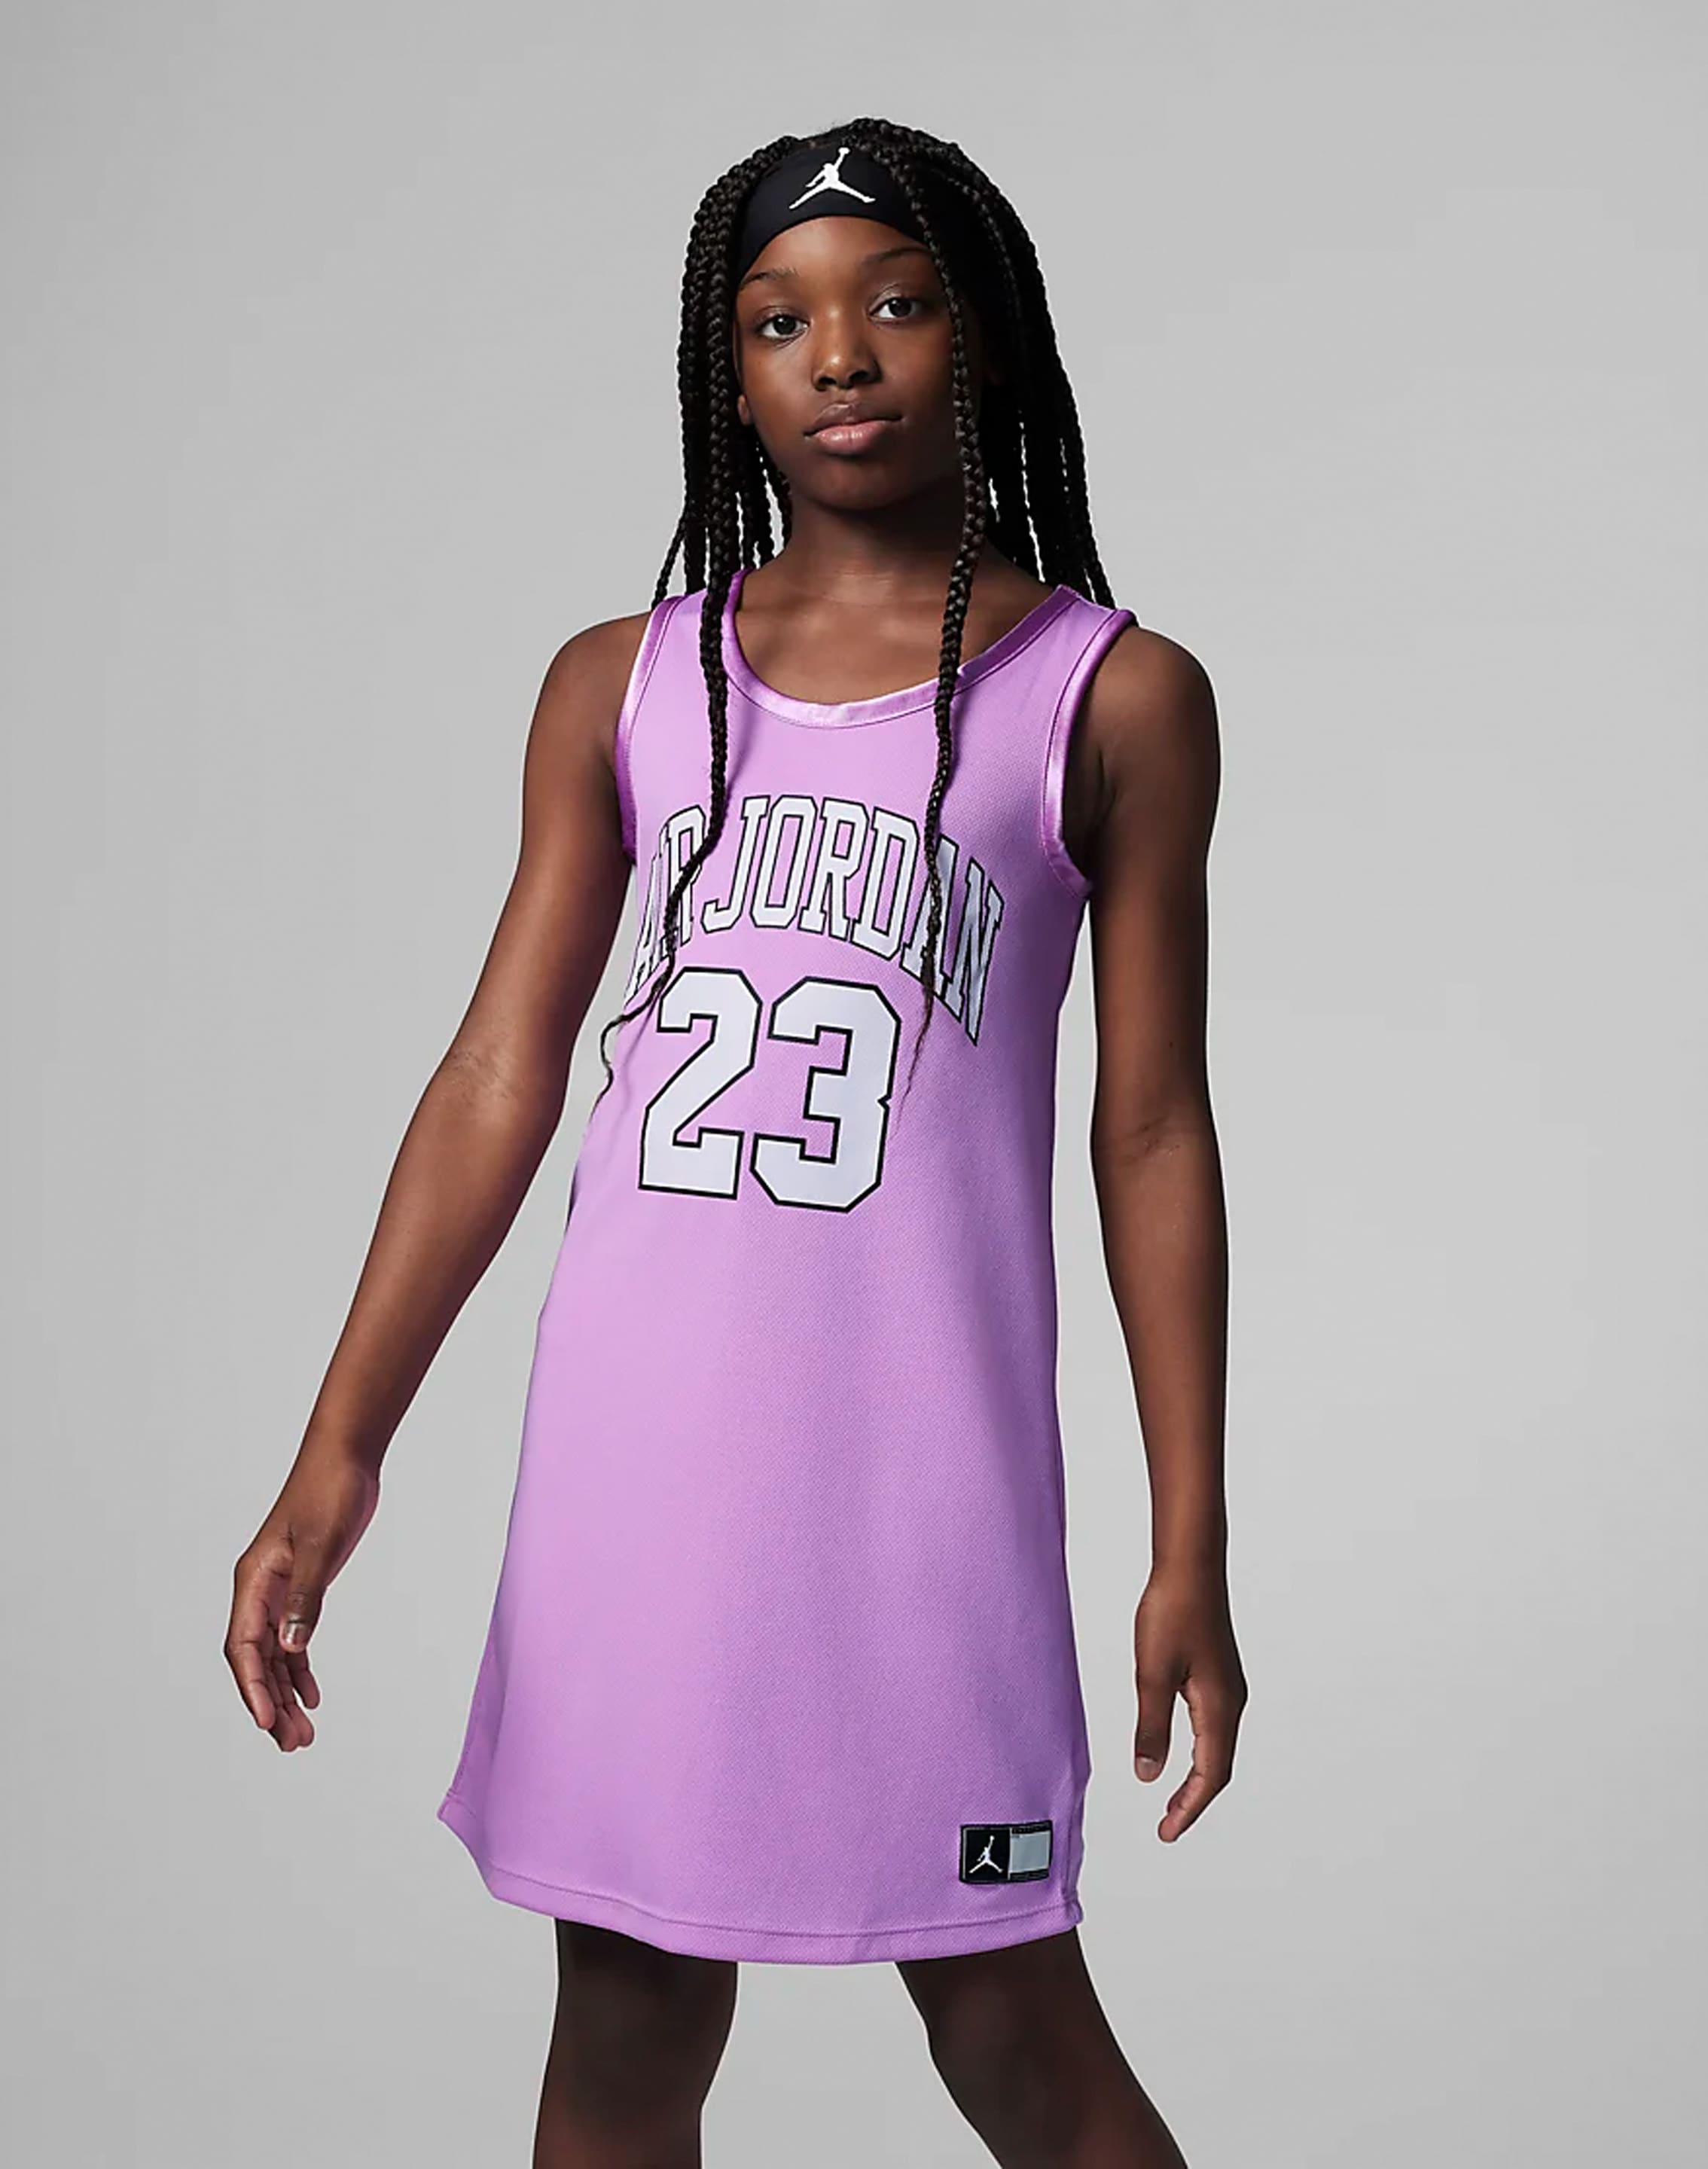 women's basketball jersey dress